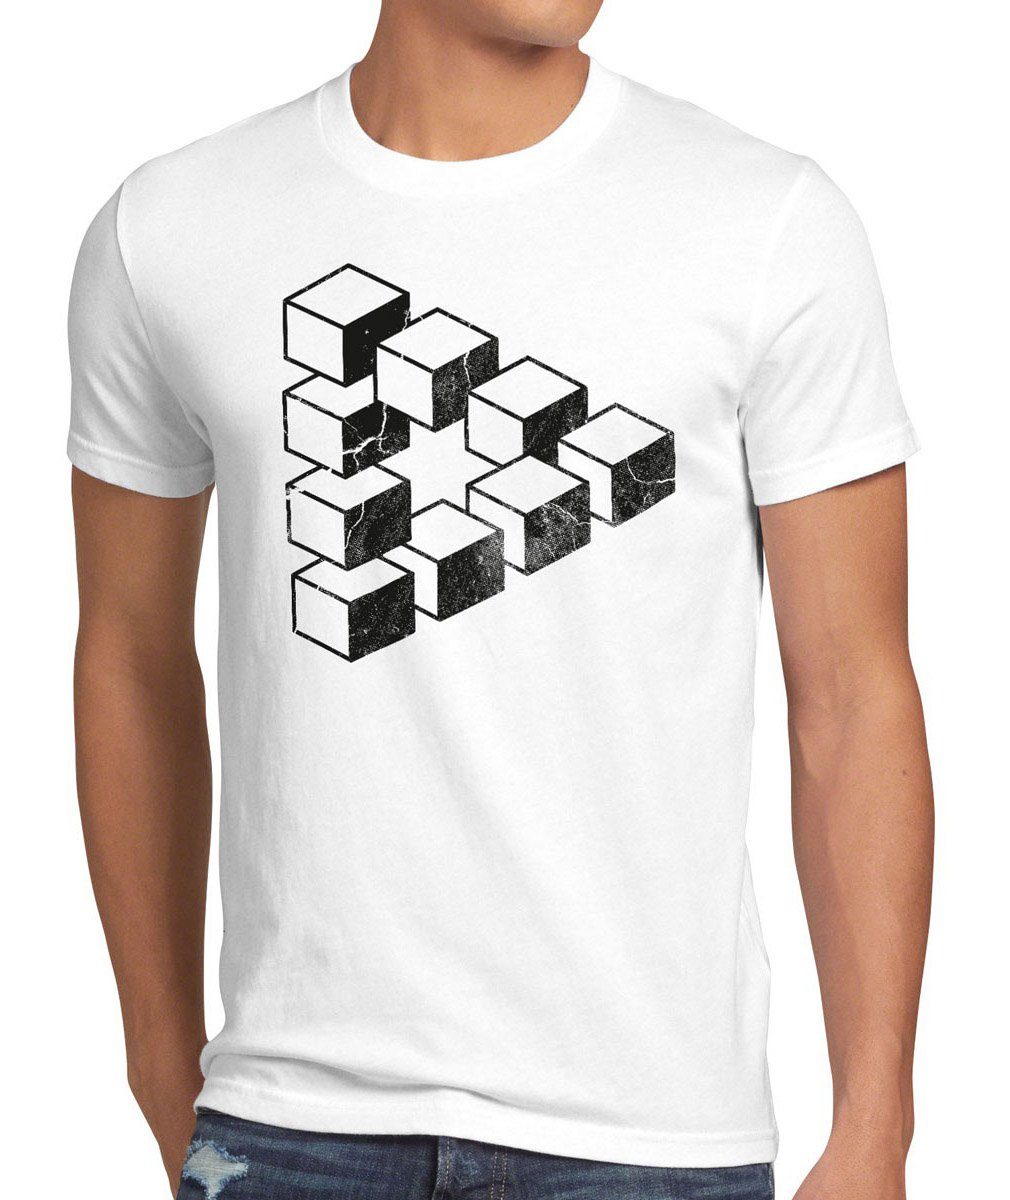 Herren T-Shirt Print-Shirt Sheldon Escher weiß Cooper Dreieck Theory bang Cube würfel Big style3 Penrose